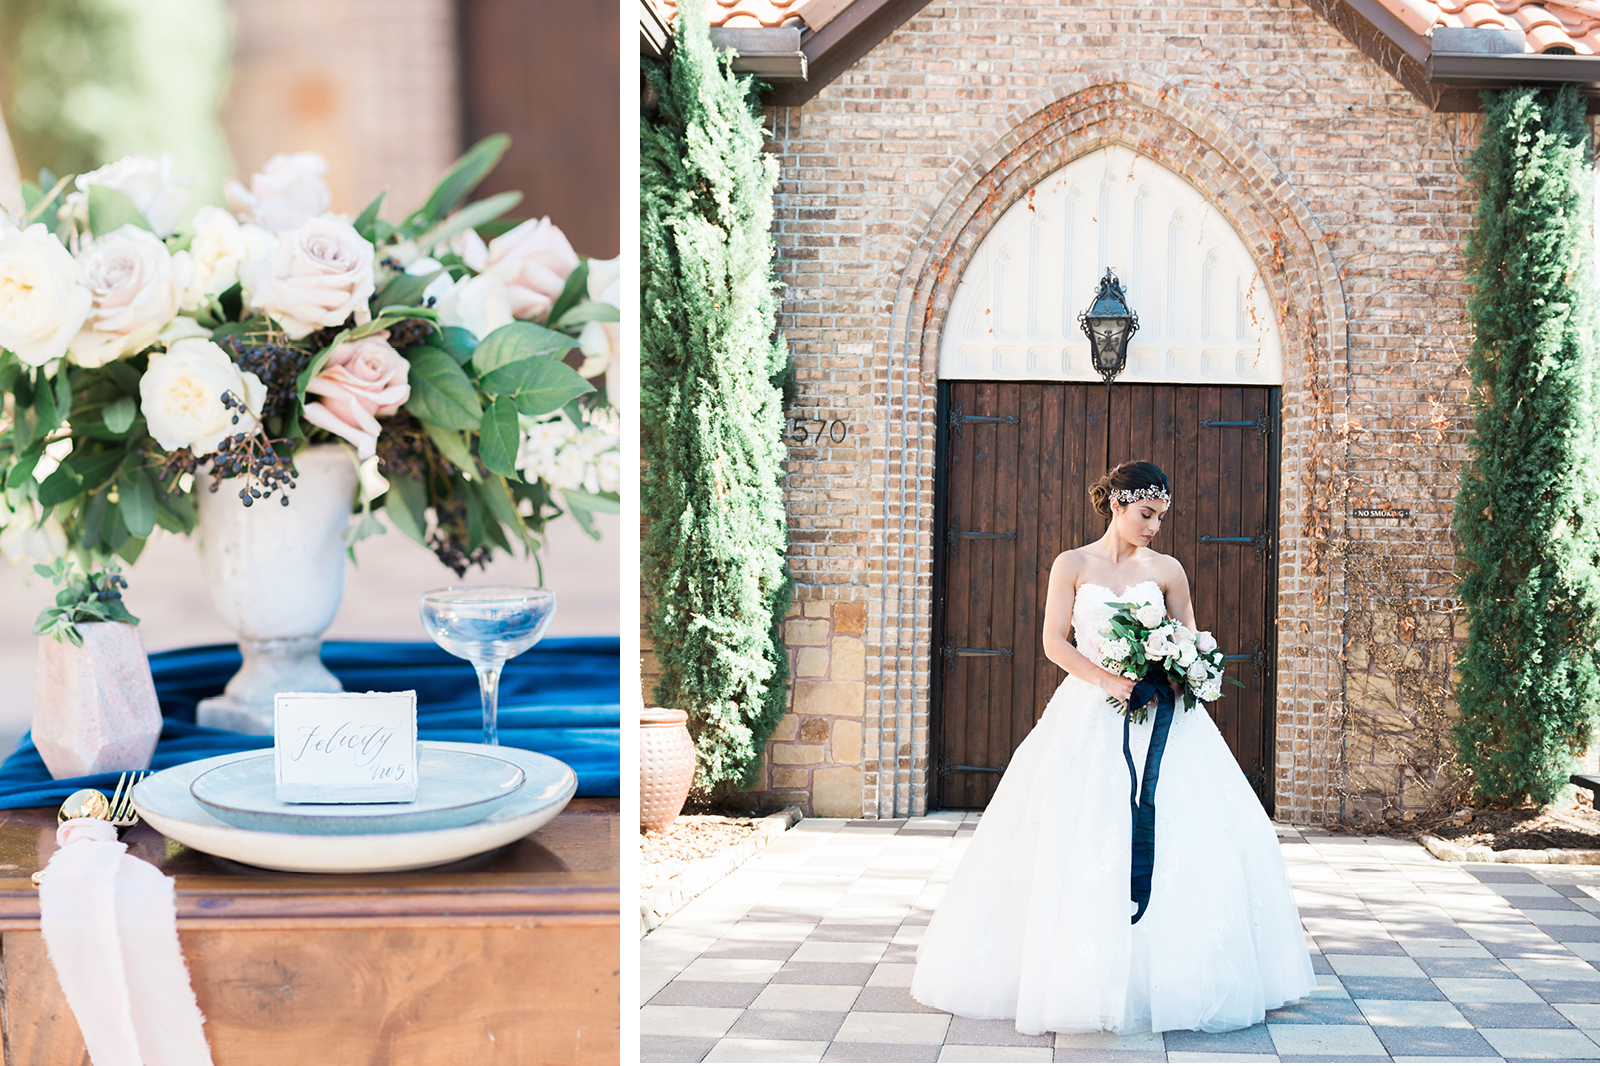 DFW Wedding Invitations // Mediterranean Inspired Wedding // Sarah Ann Design